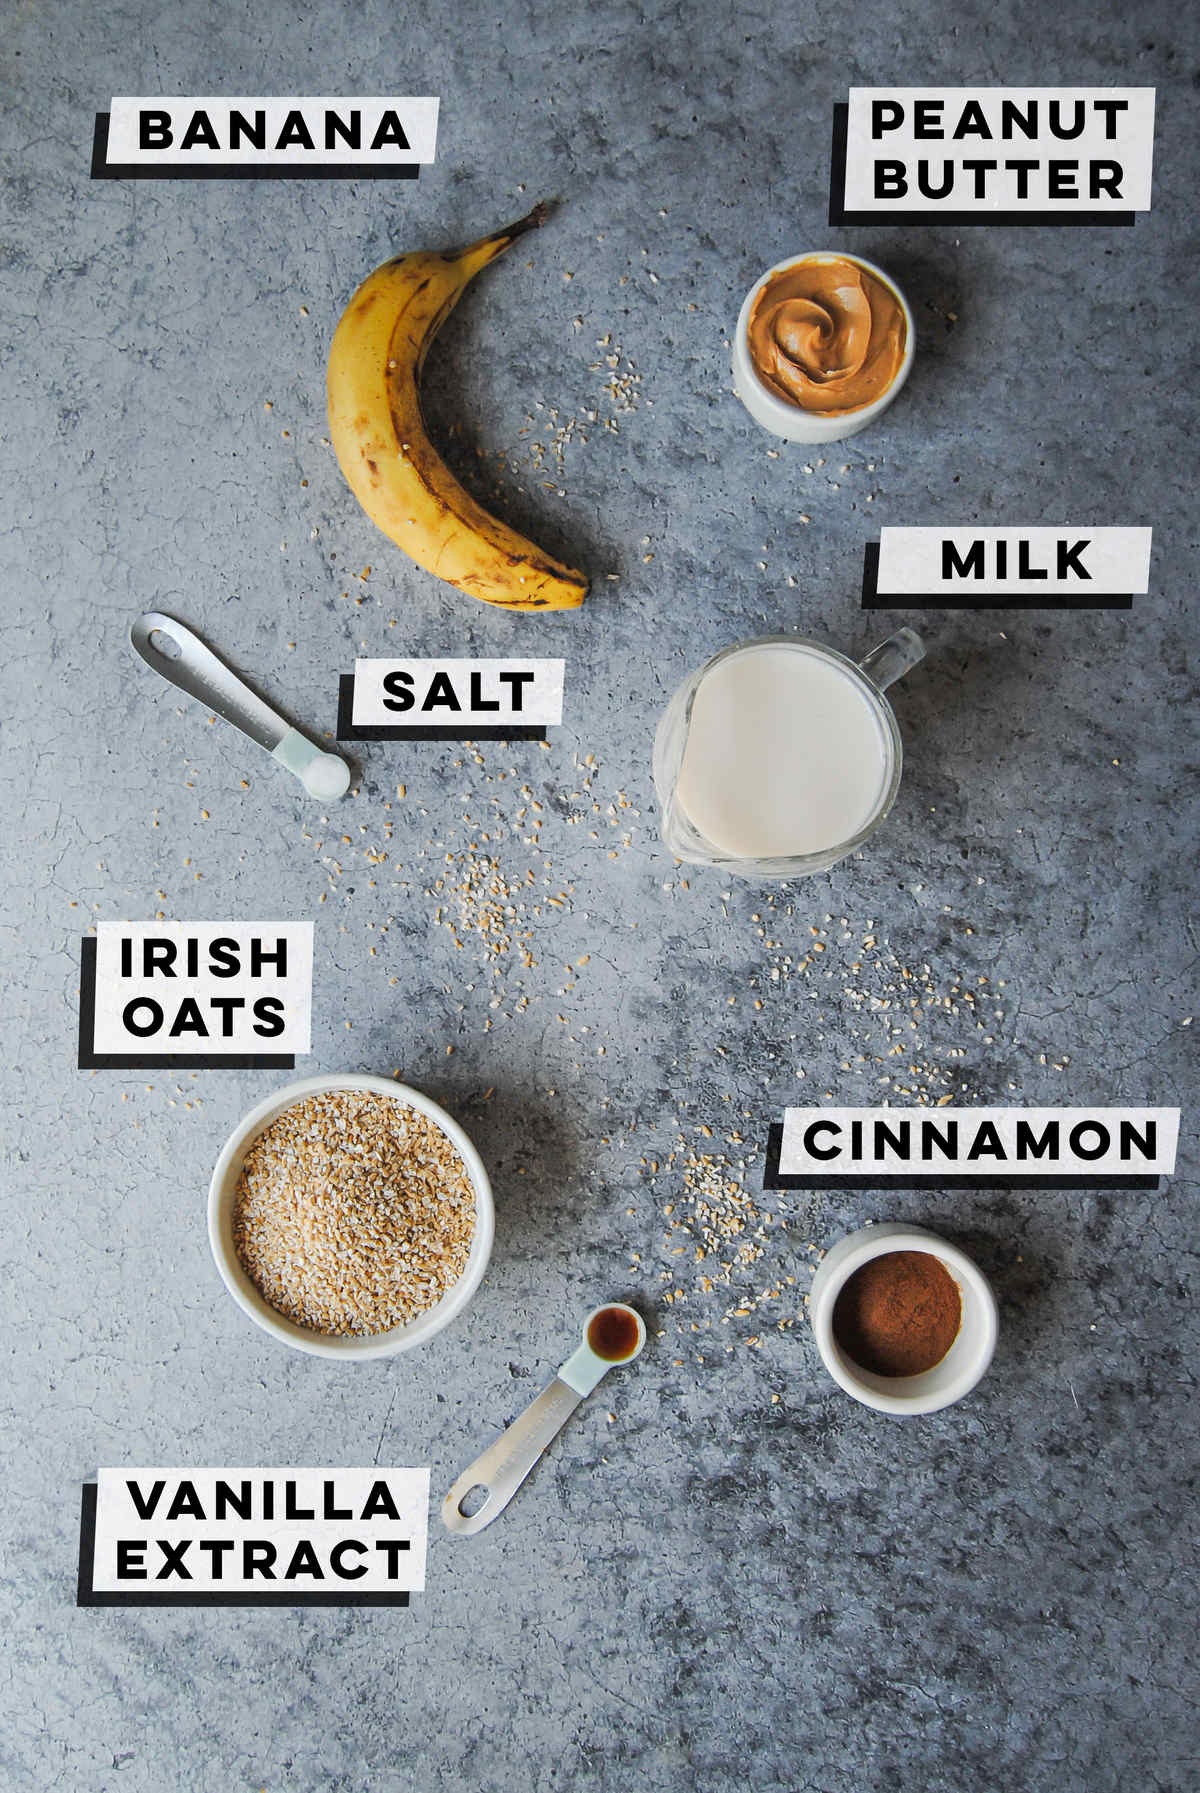 banana, peanut butter, milk, salt, irish oats, cinnamon, vanilla extract